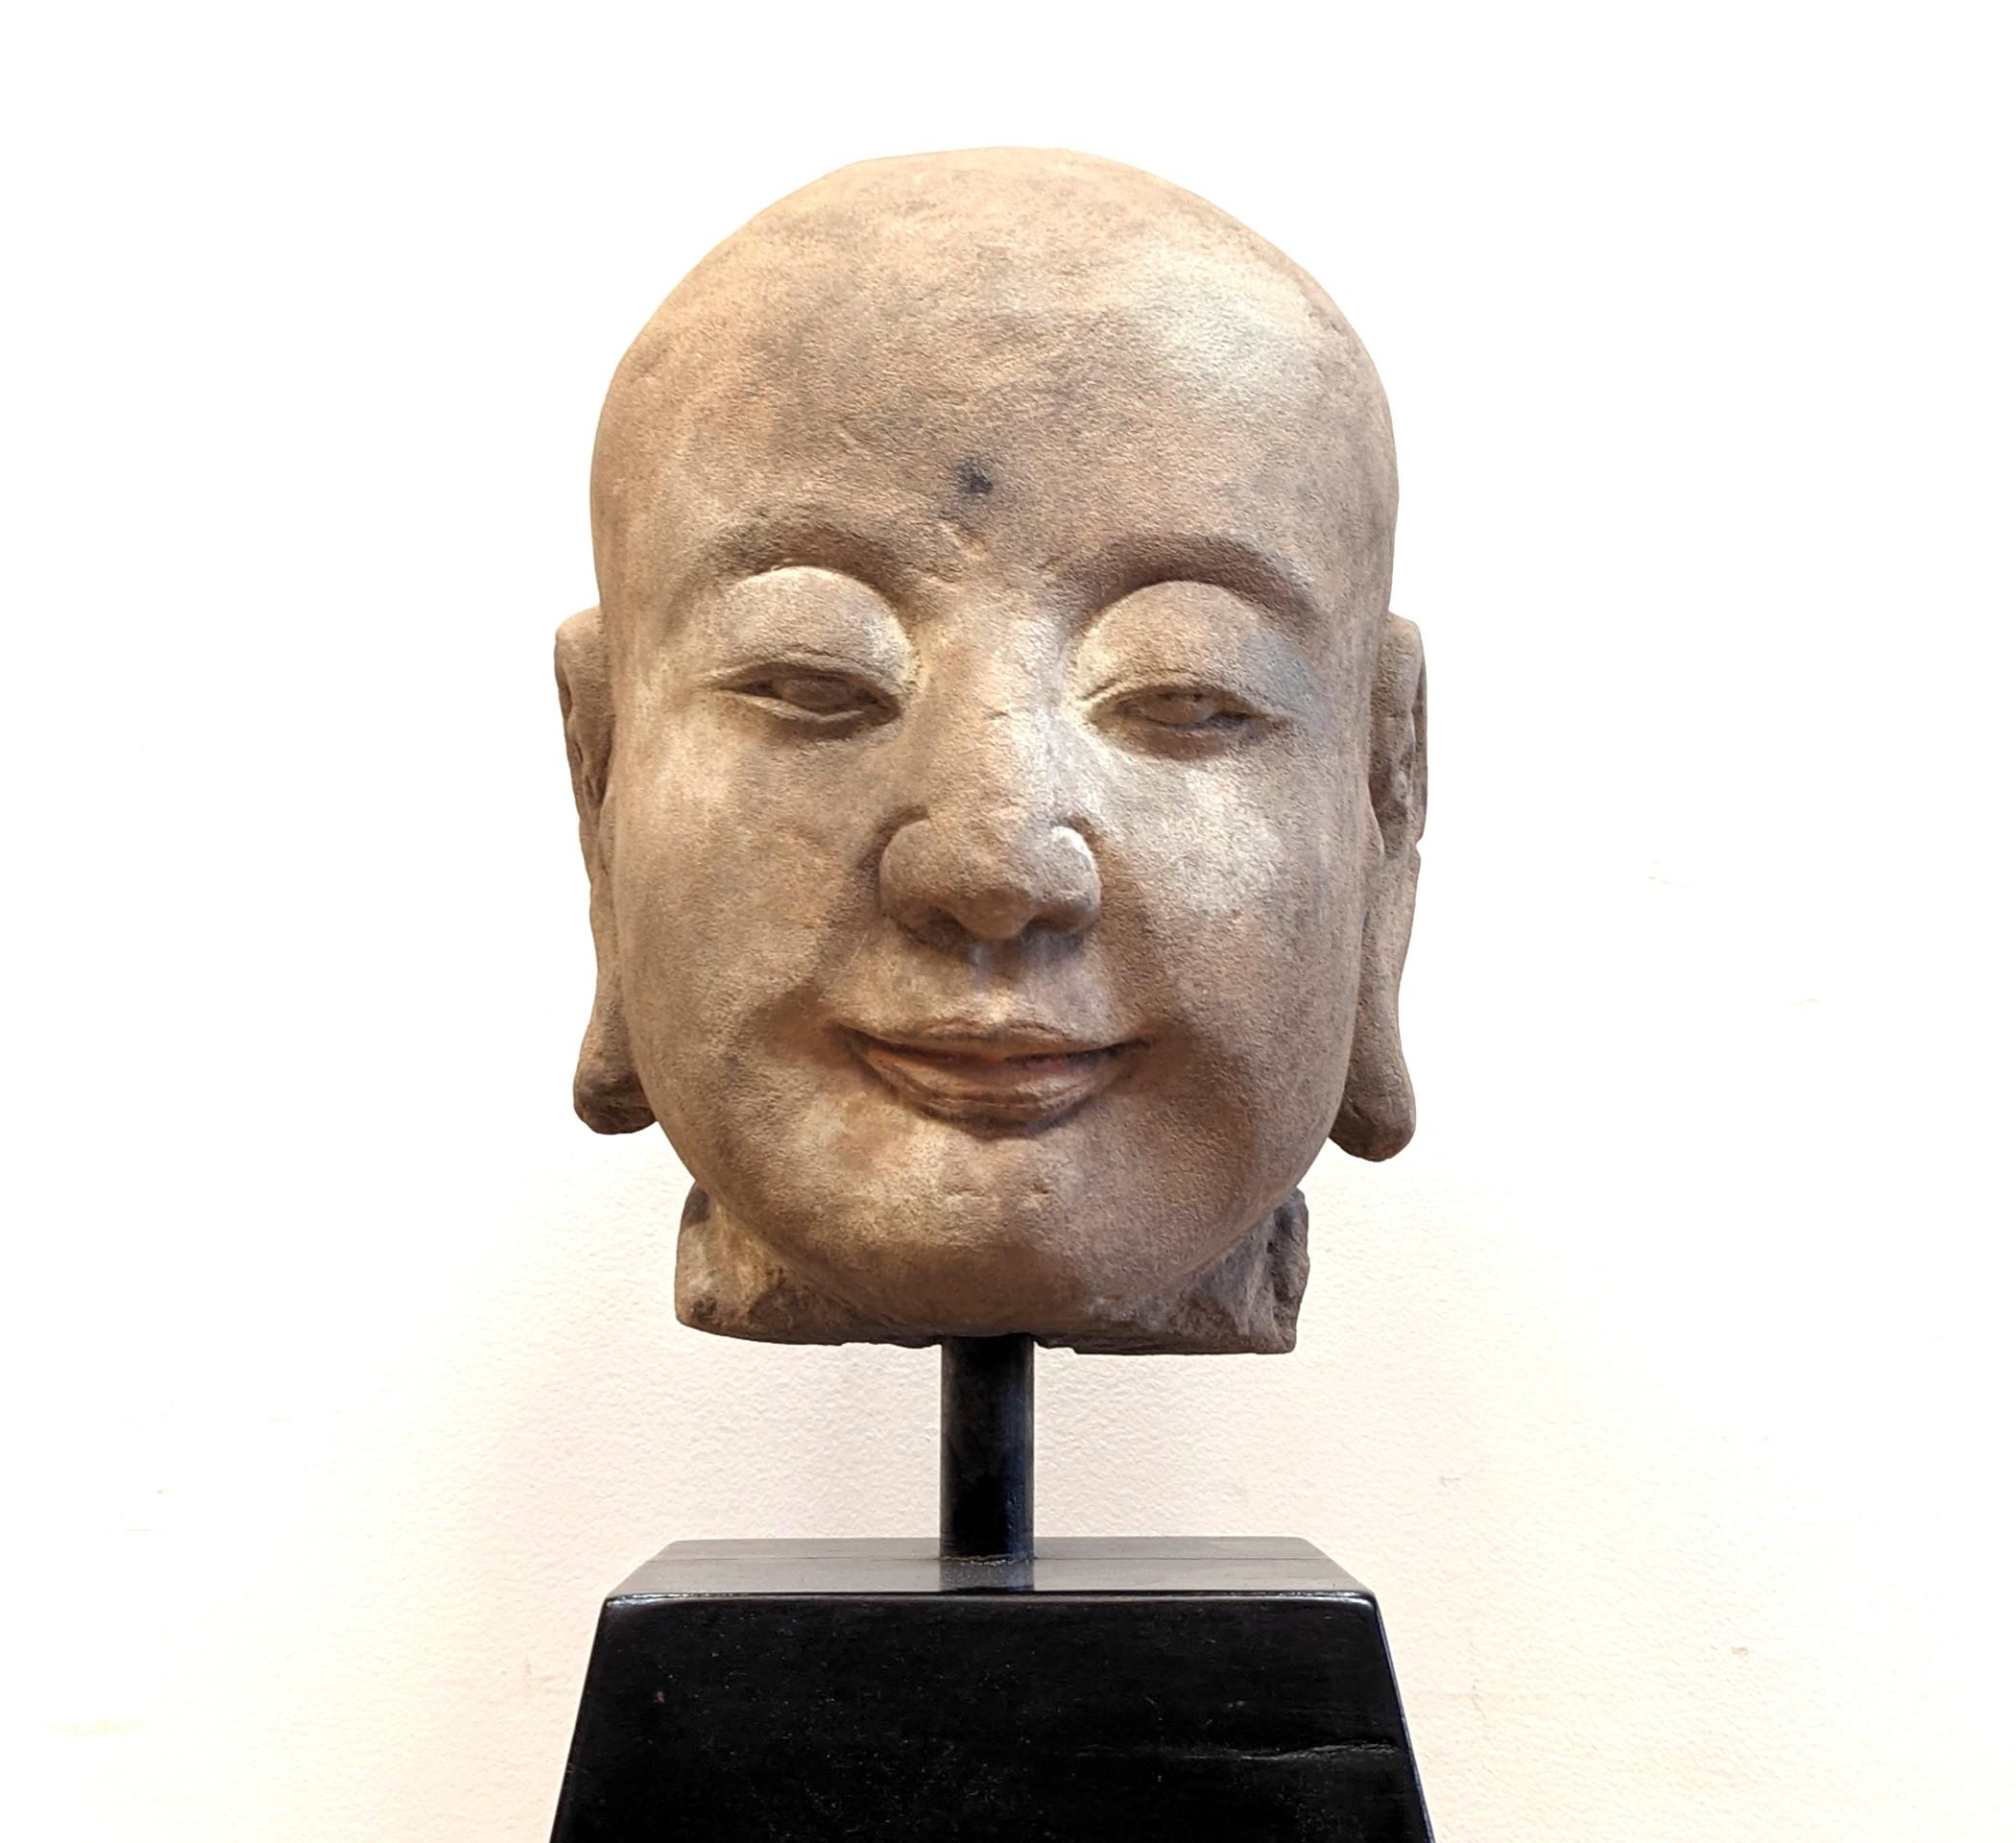 Antike buddhistische Kopfskulptur aus Sandstein.  Buddha-Kopf aus Sandstein 19. Jahrhundert oder früher Buddhistische Kopfskulptur.  Bestehend aus Sandstein, von Hand gemeißelt, mit fesselnden Details von heiterem Ausdruck, wie das Leben.  Diese